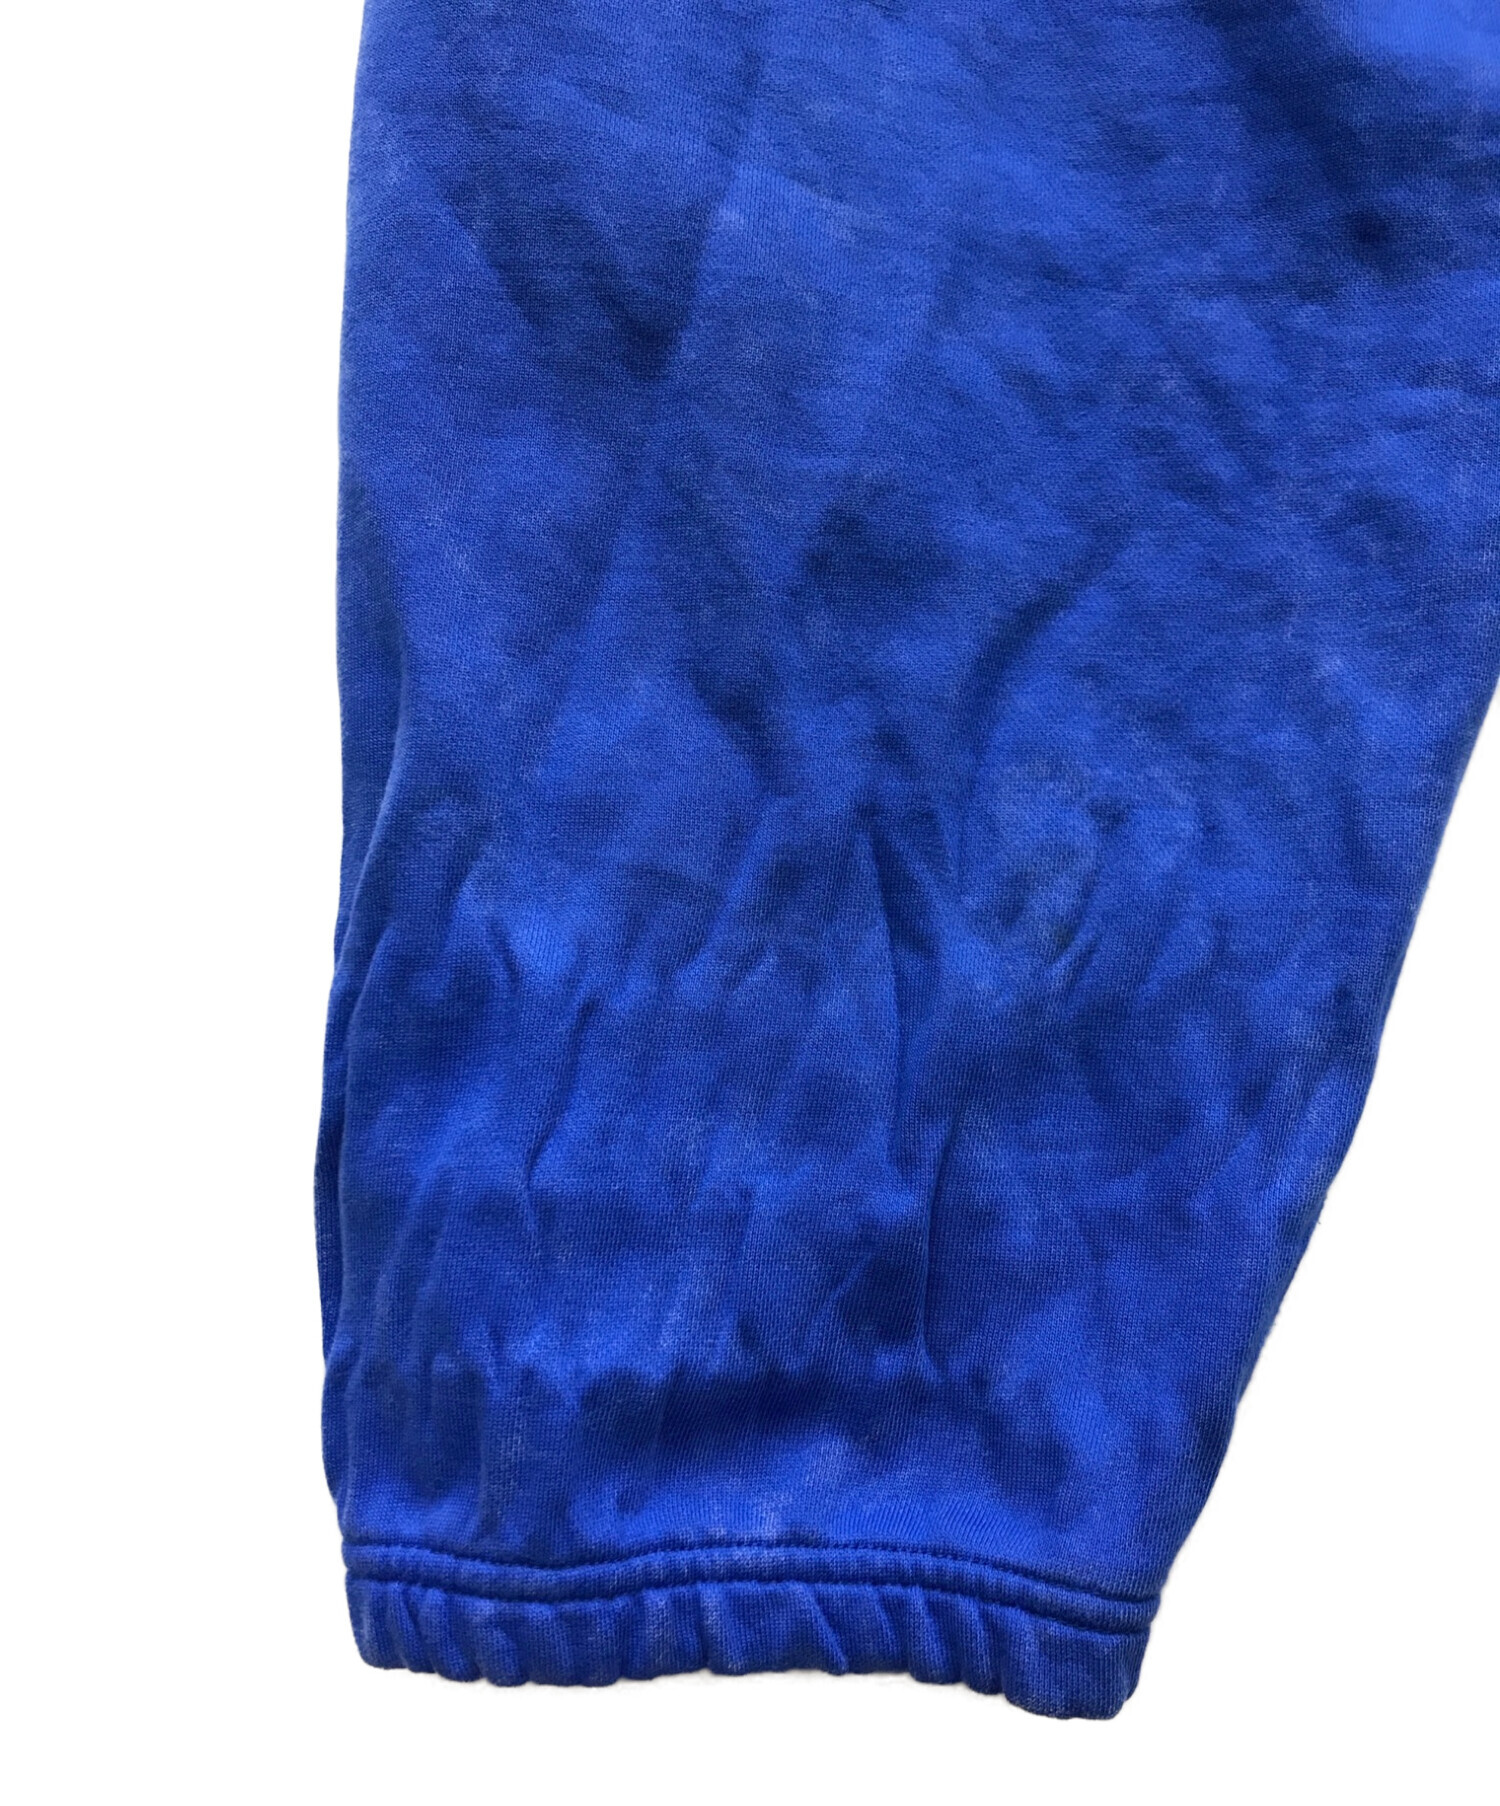 NIKE (ナイキ) stussy (ステューシー) スウェットパンツ ブルー サイズ:XL